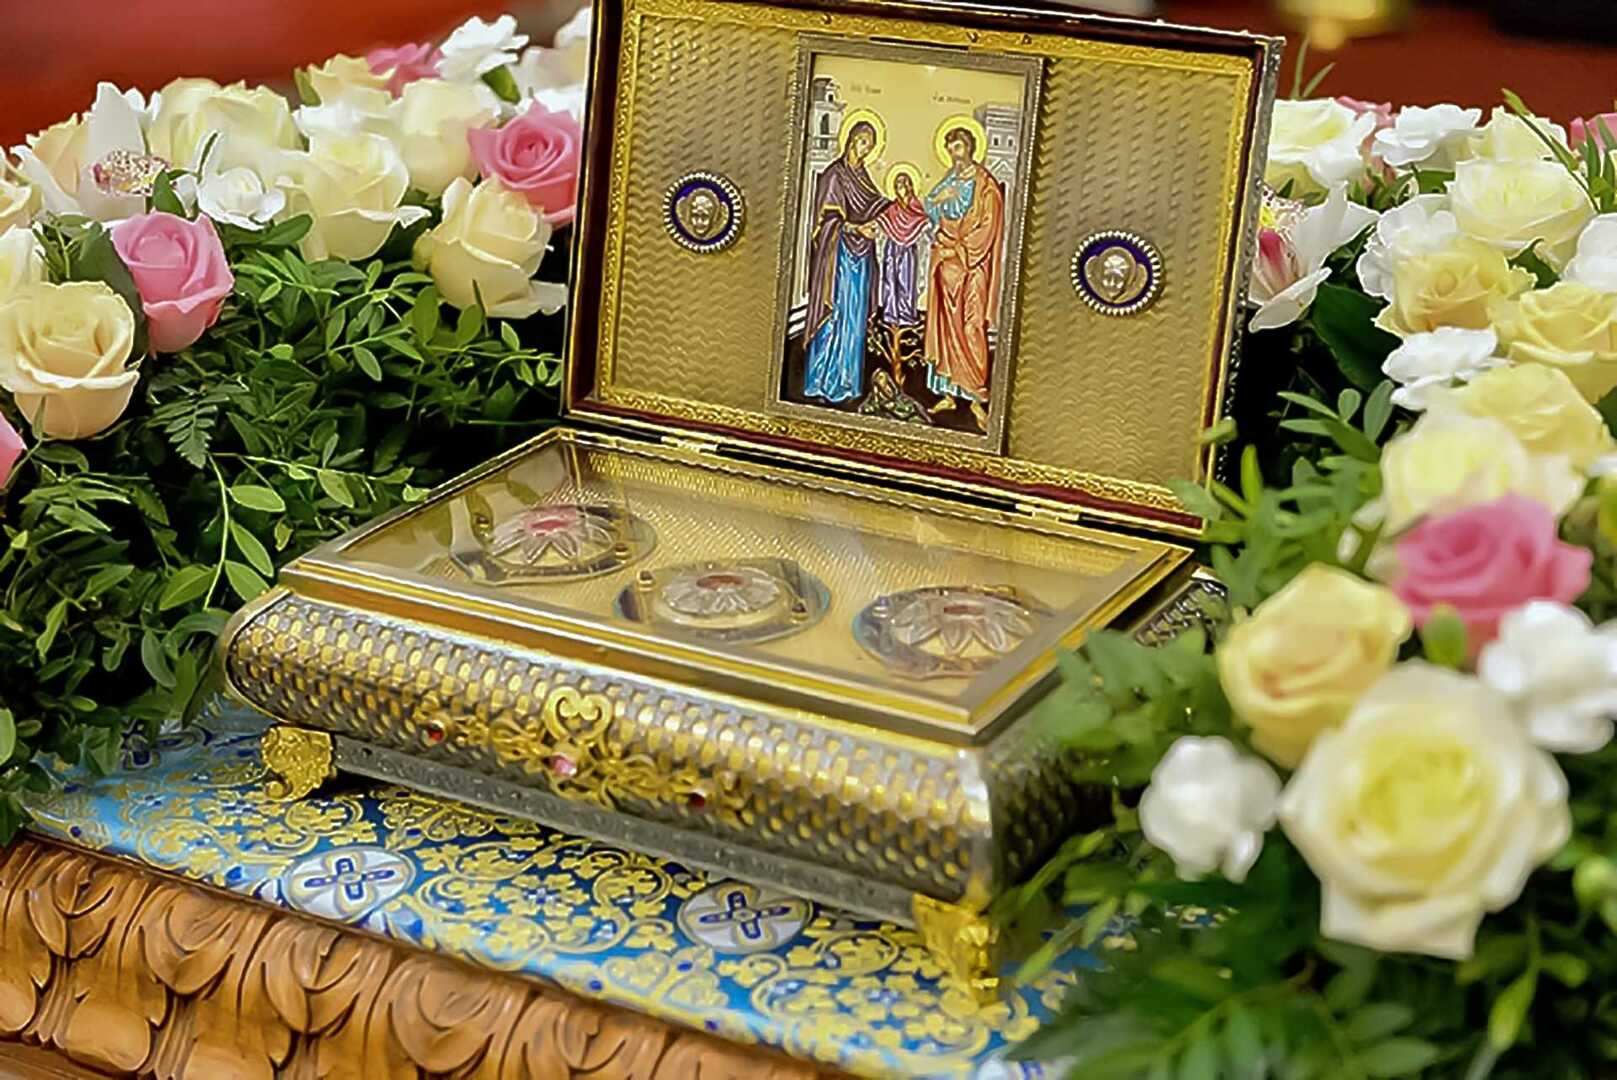 В Кострому на два дня прибудет ковчег с частью пояса пресвятой Богородицы